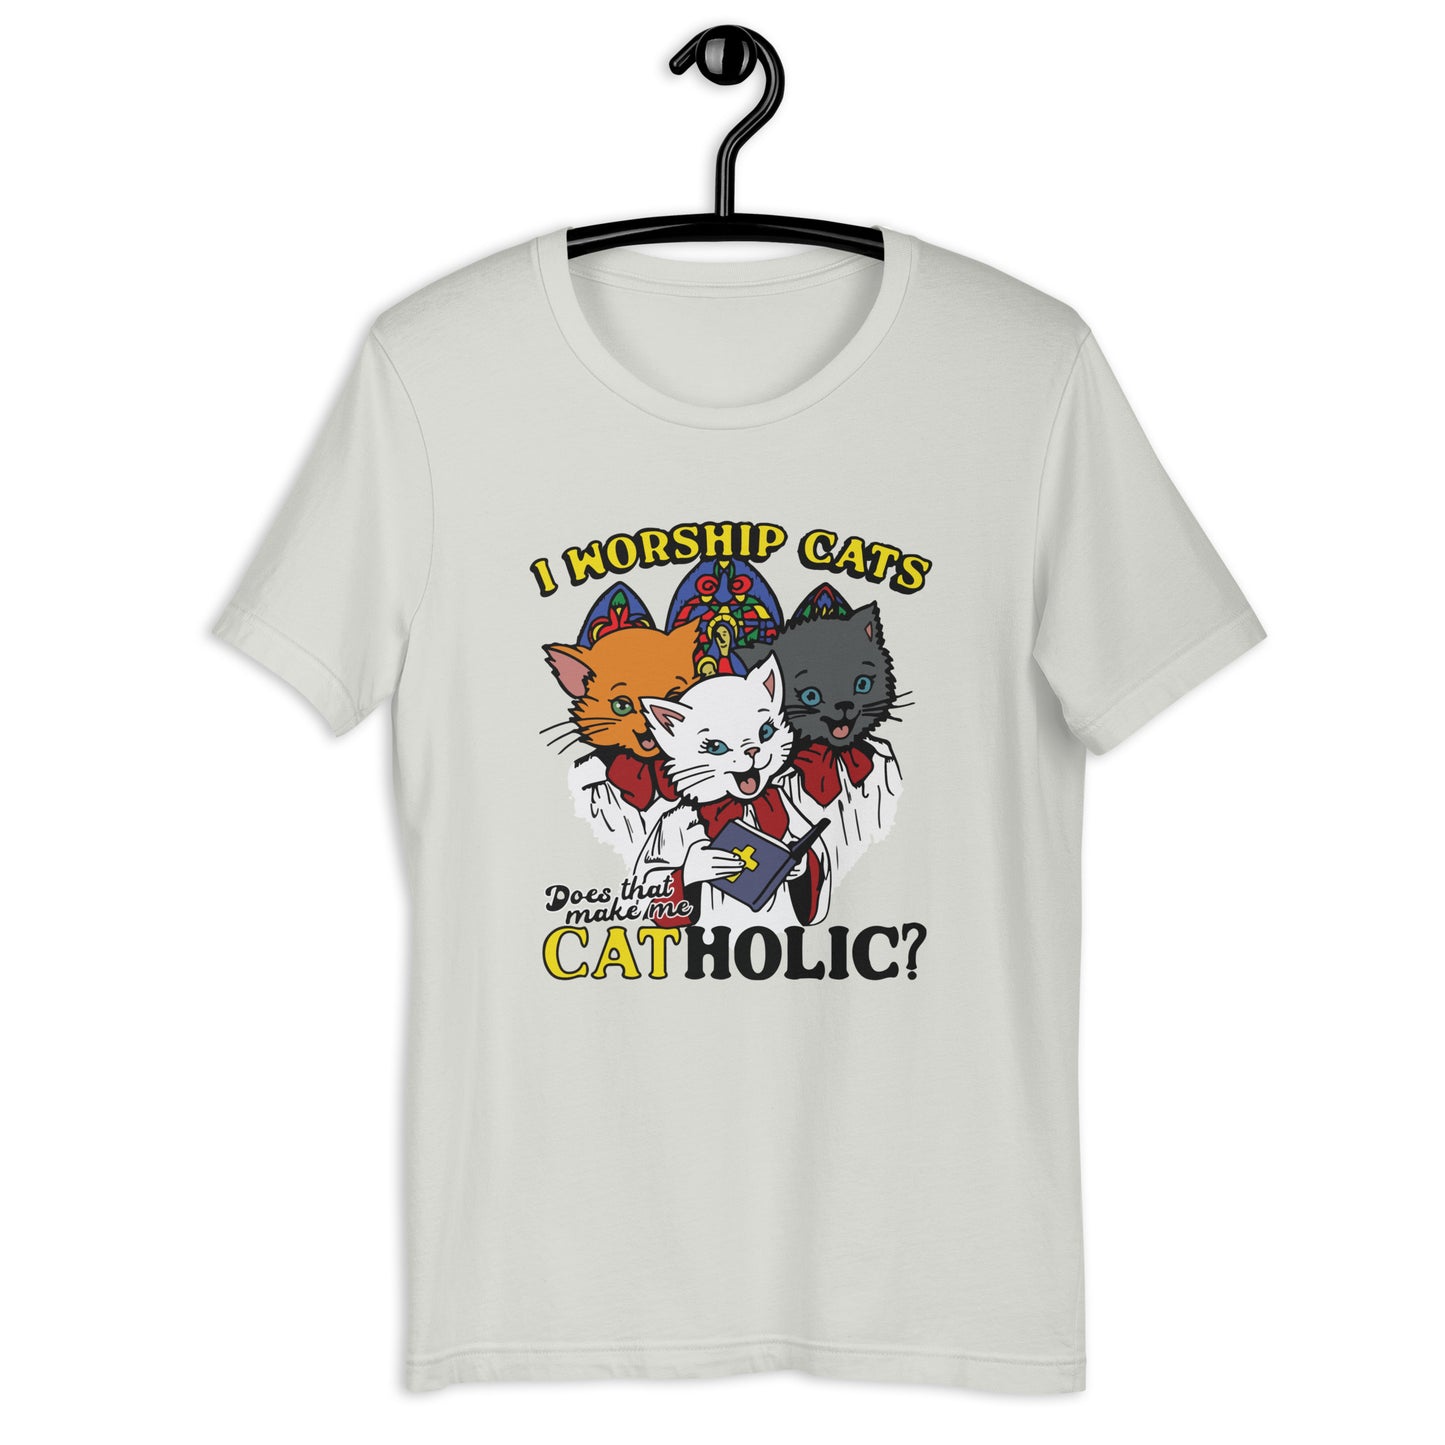 Adoro a los gatos. ¿Eso me hace católico? Camiseta unisex